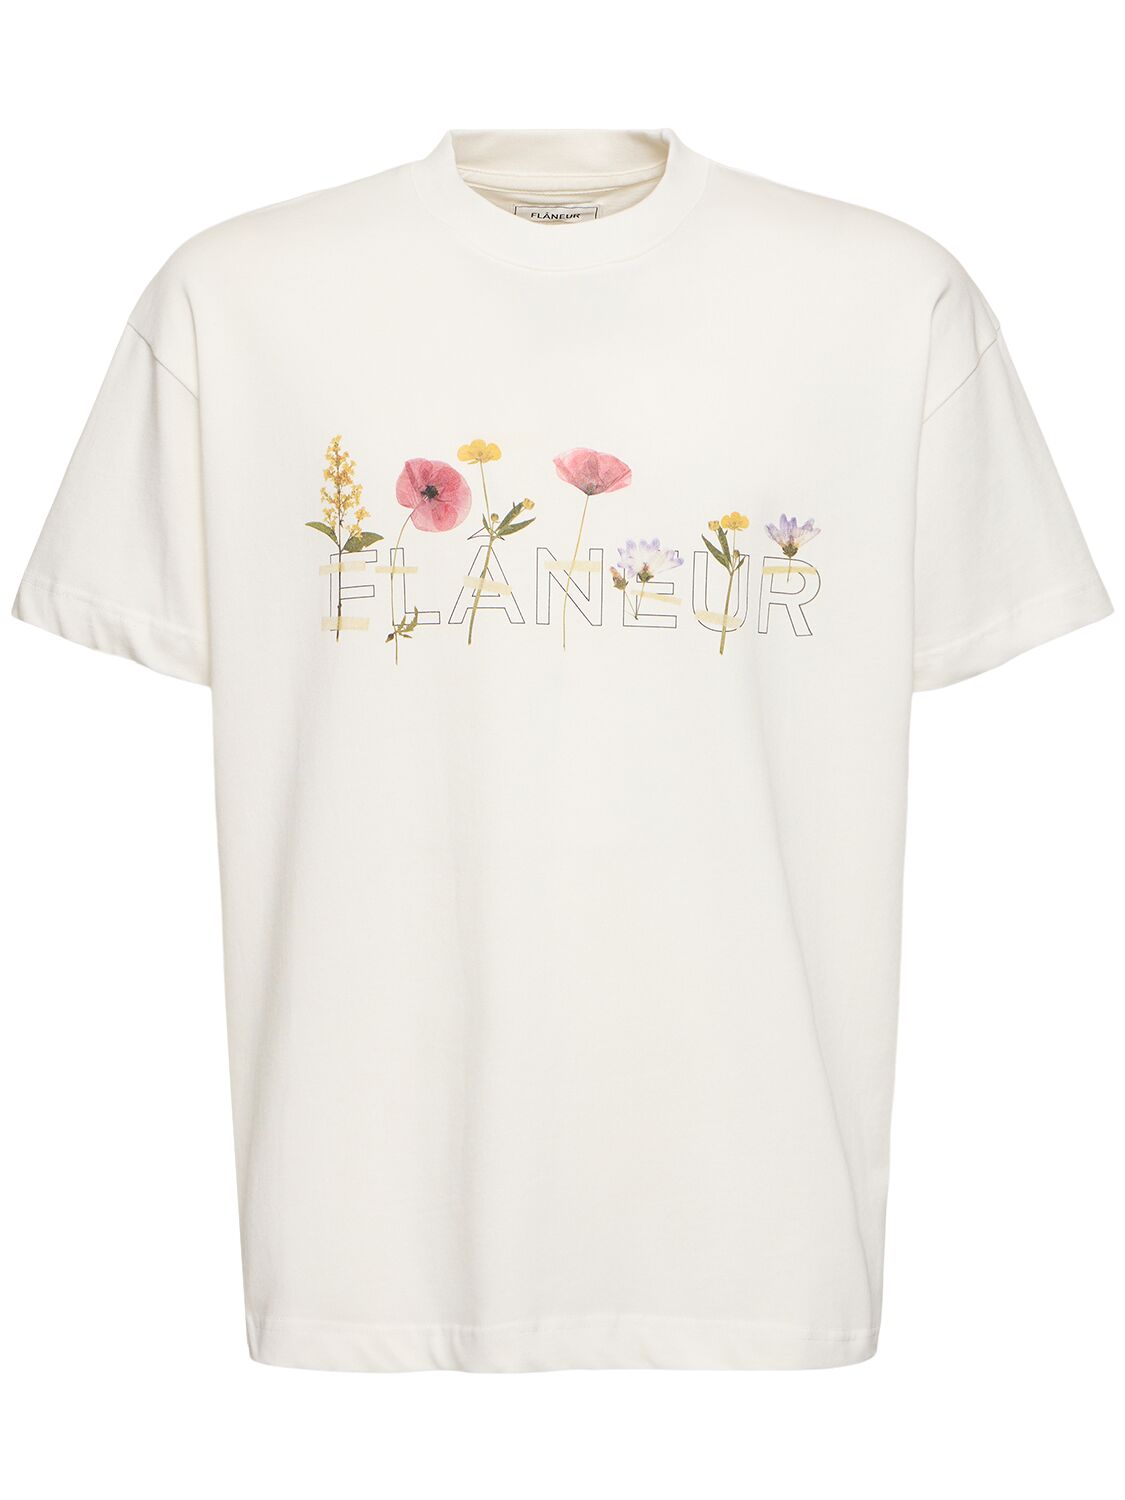 Flâneur Botanical T-shirt In White